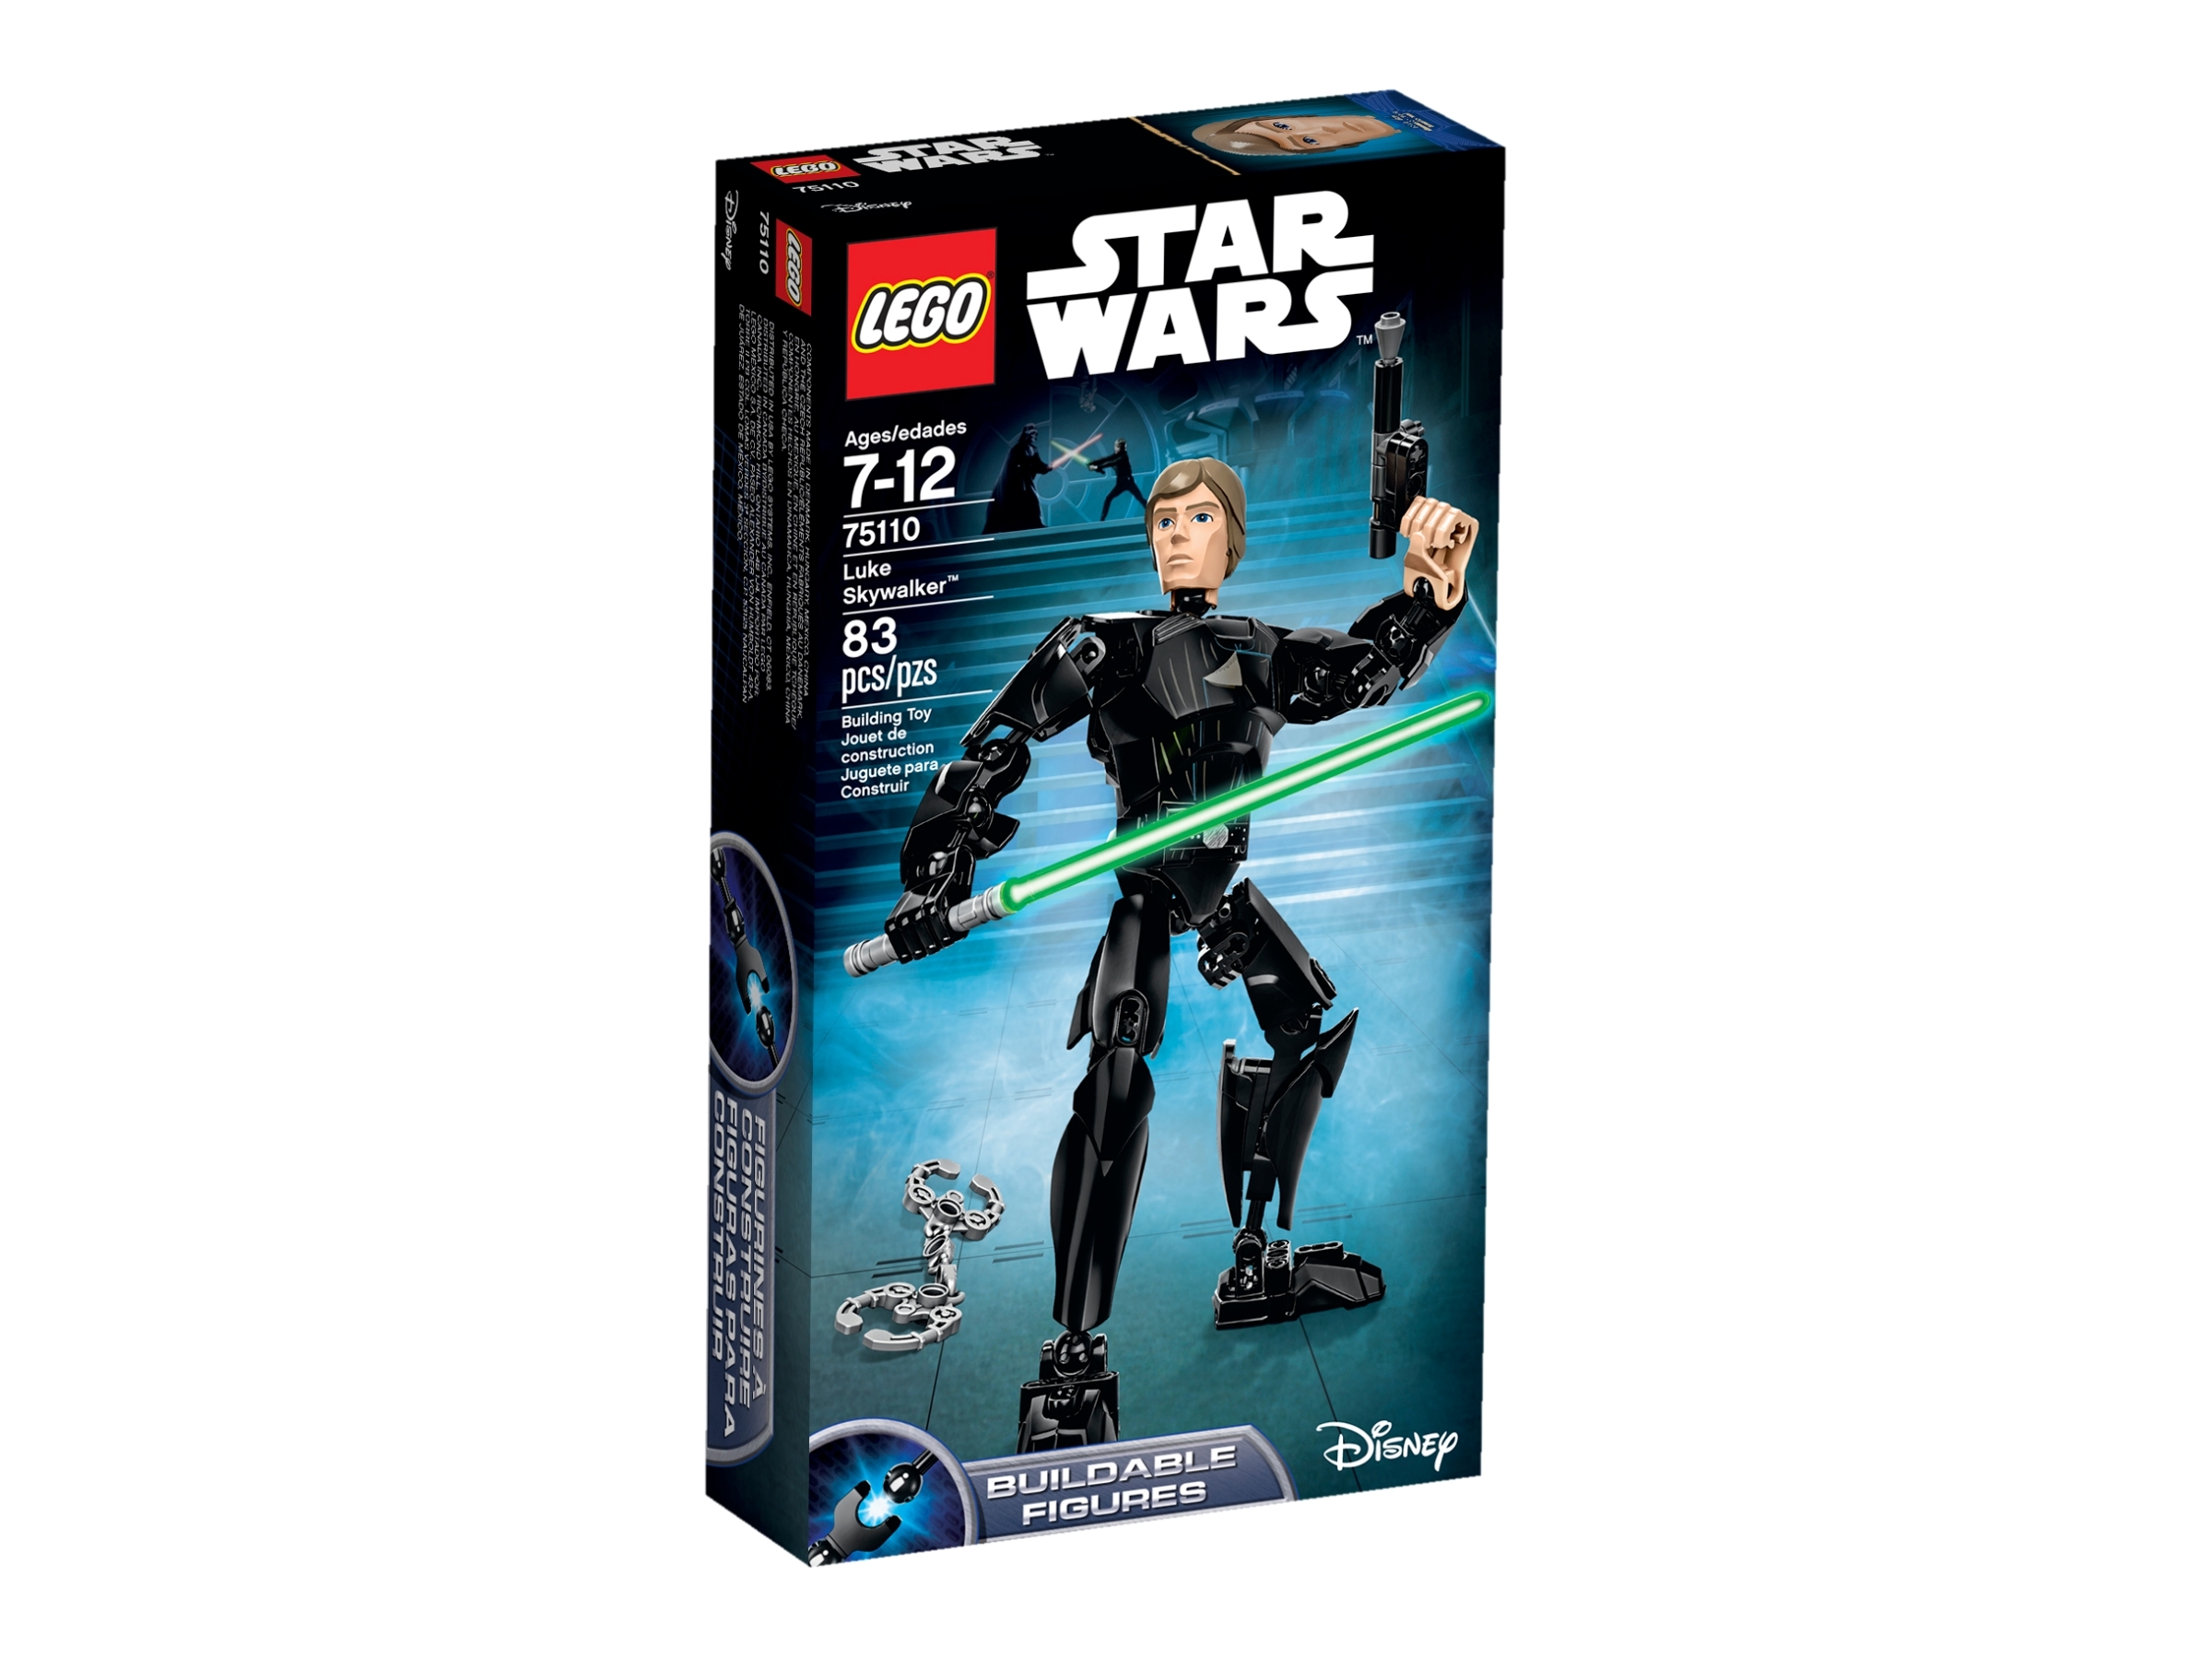 5835Z-18 LEGO STAR WARS 75110 Luke Skywalker MISB 